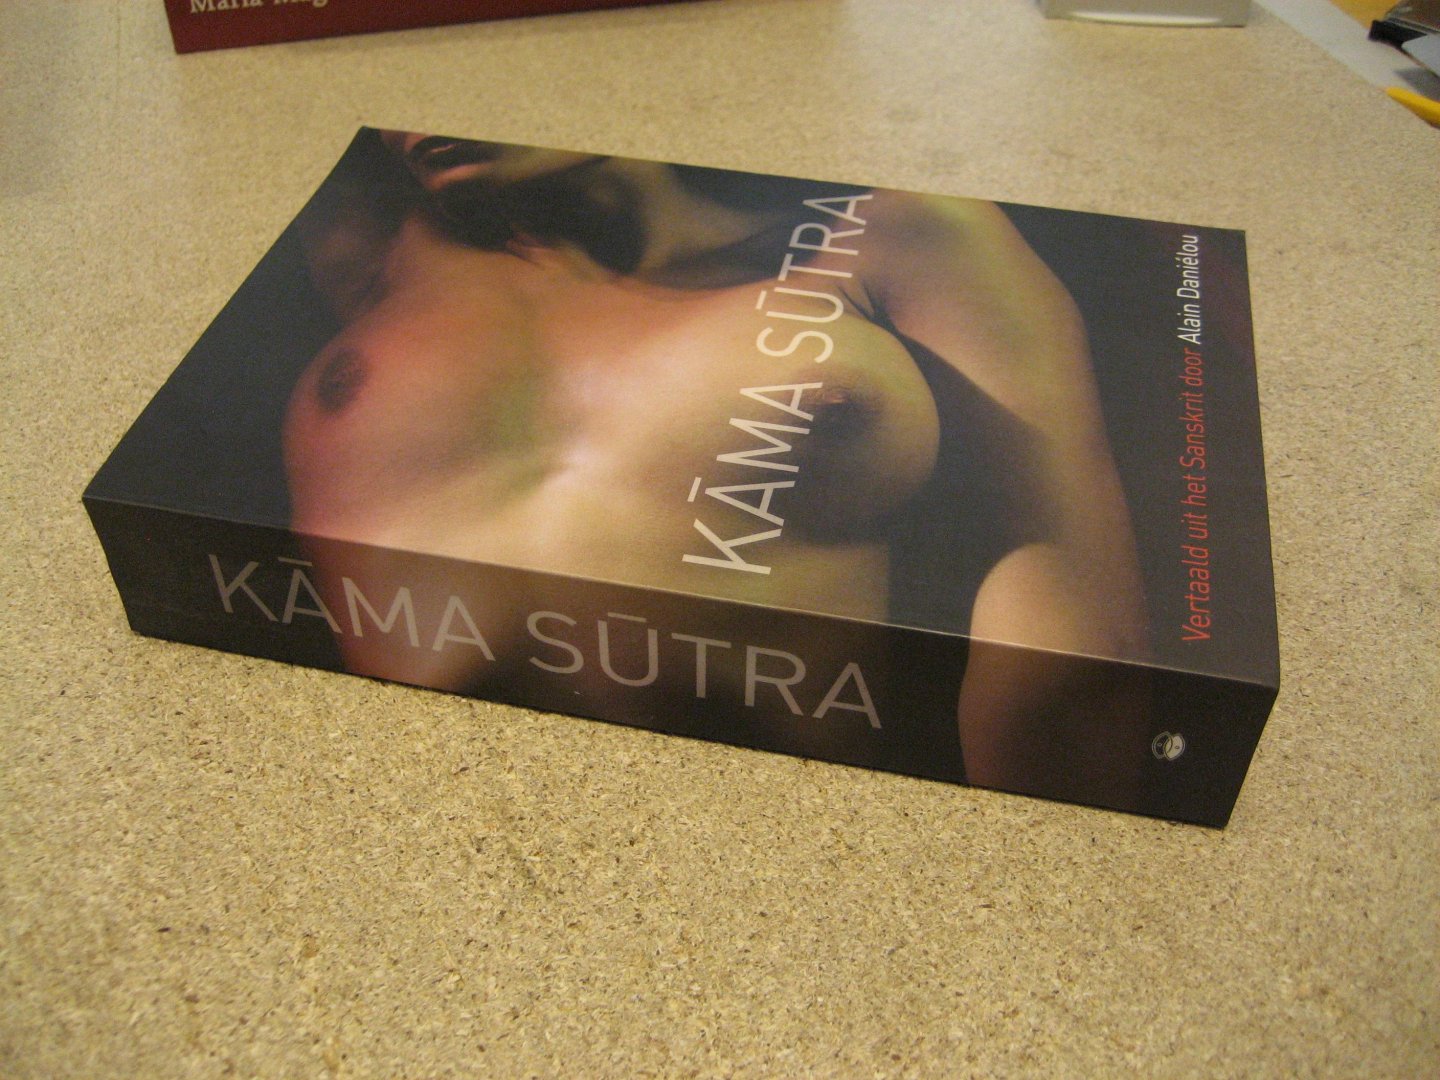 Vatsyayana - Kama Sutra. Vertaald uit het Sanskrit door Alain Daniélou